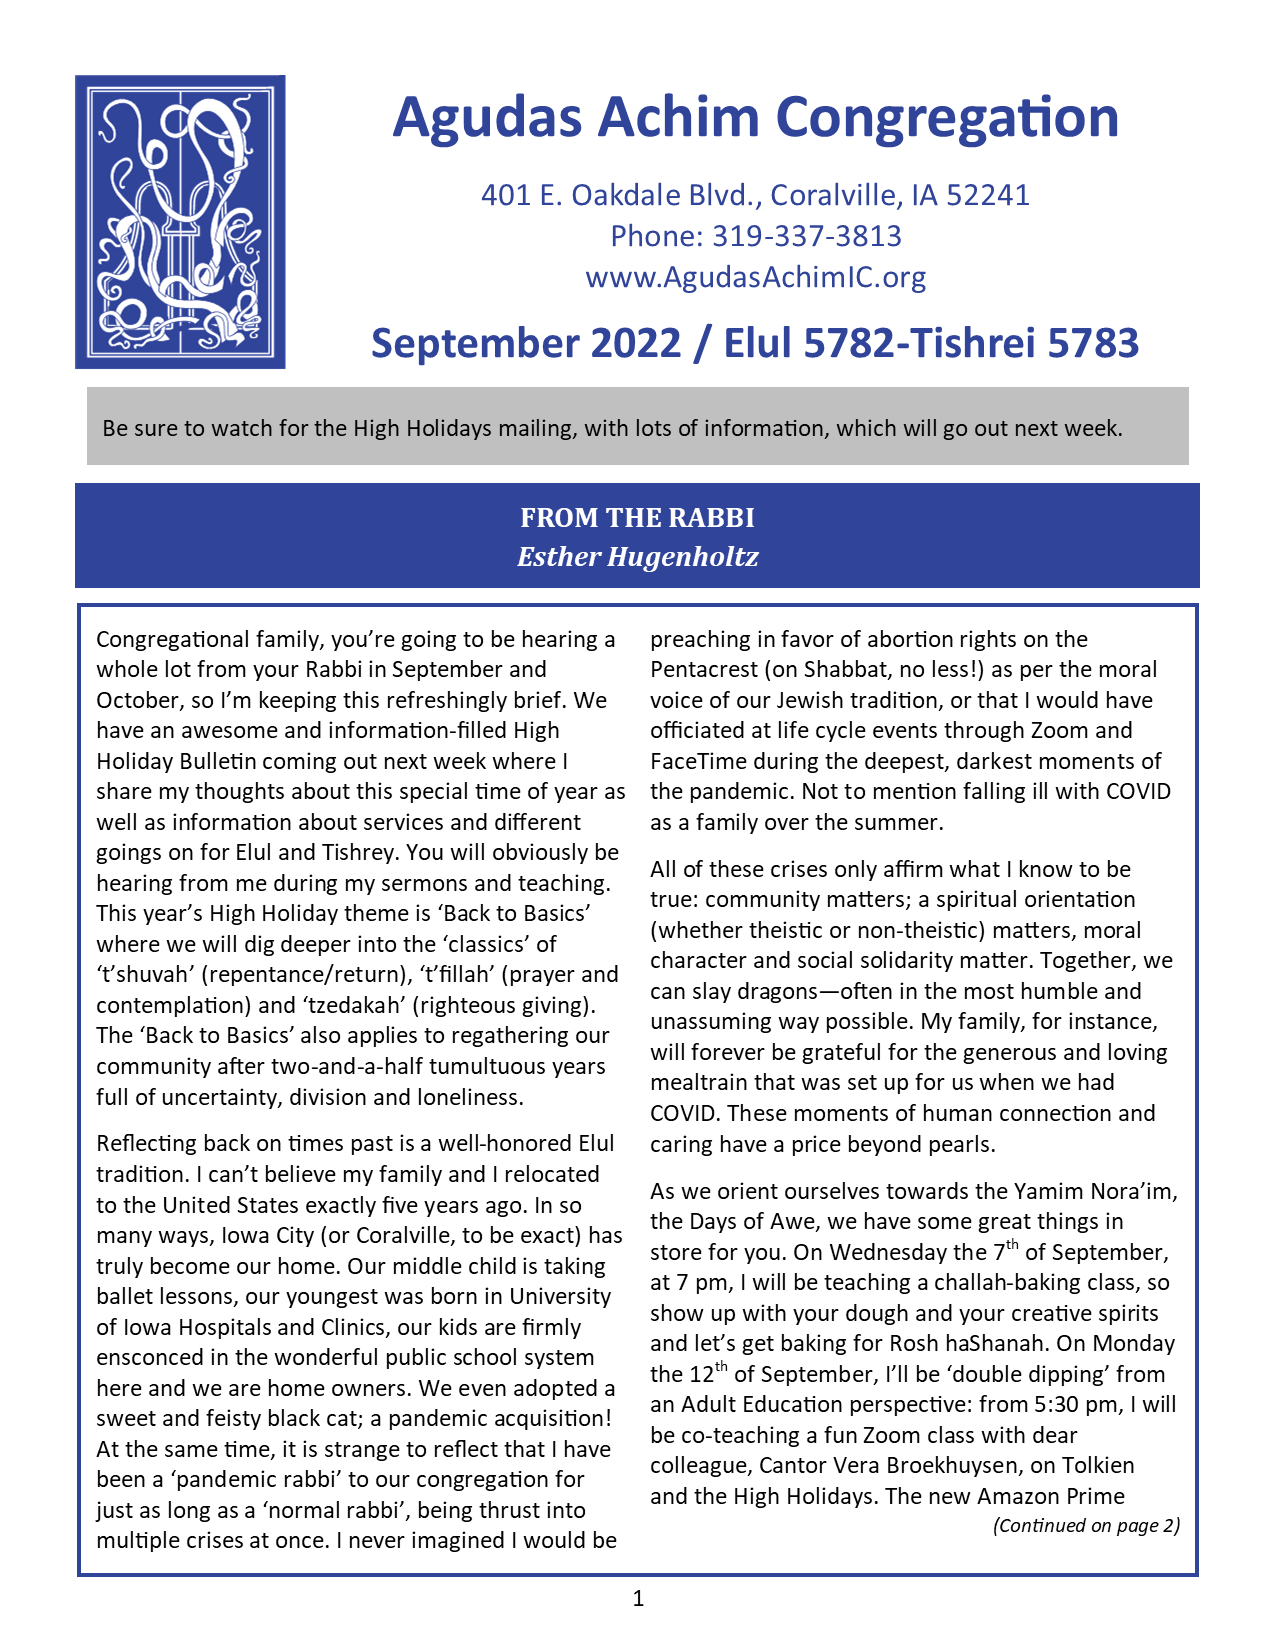 September 2022 Bulletin Cover